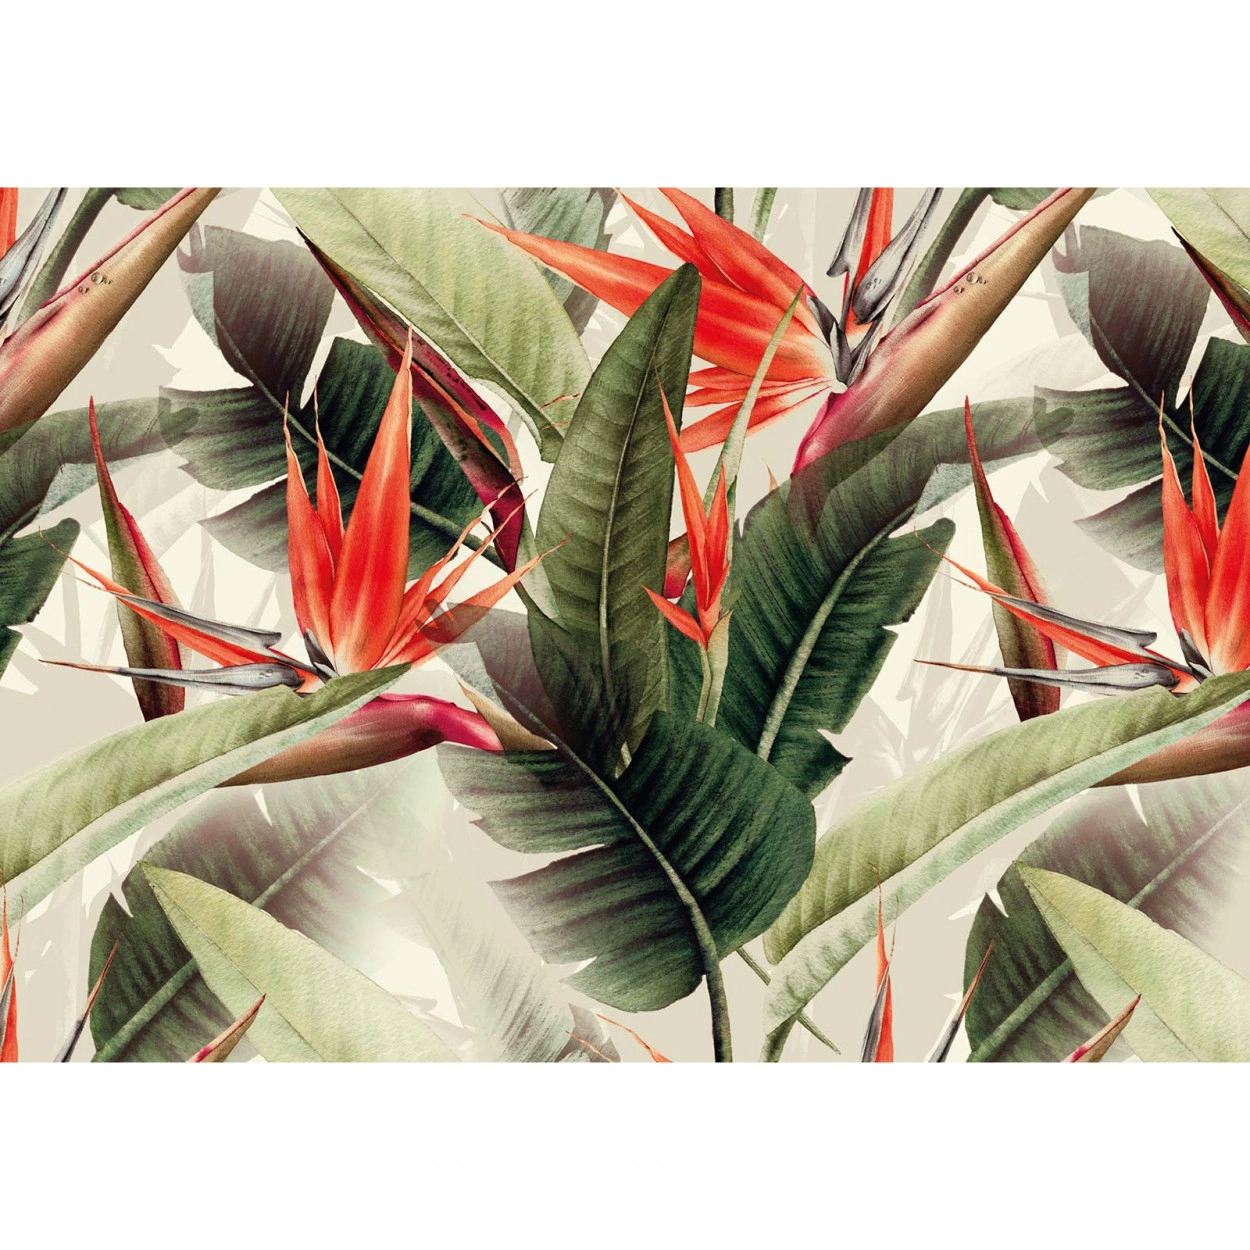 Fali poszter trópusi levél és virág mintával modern stílusban